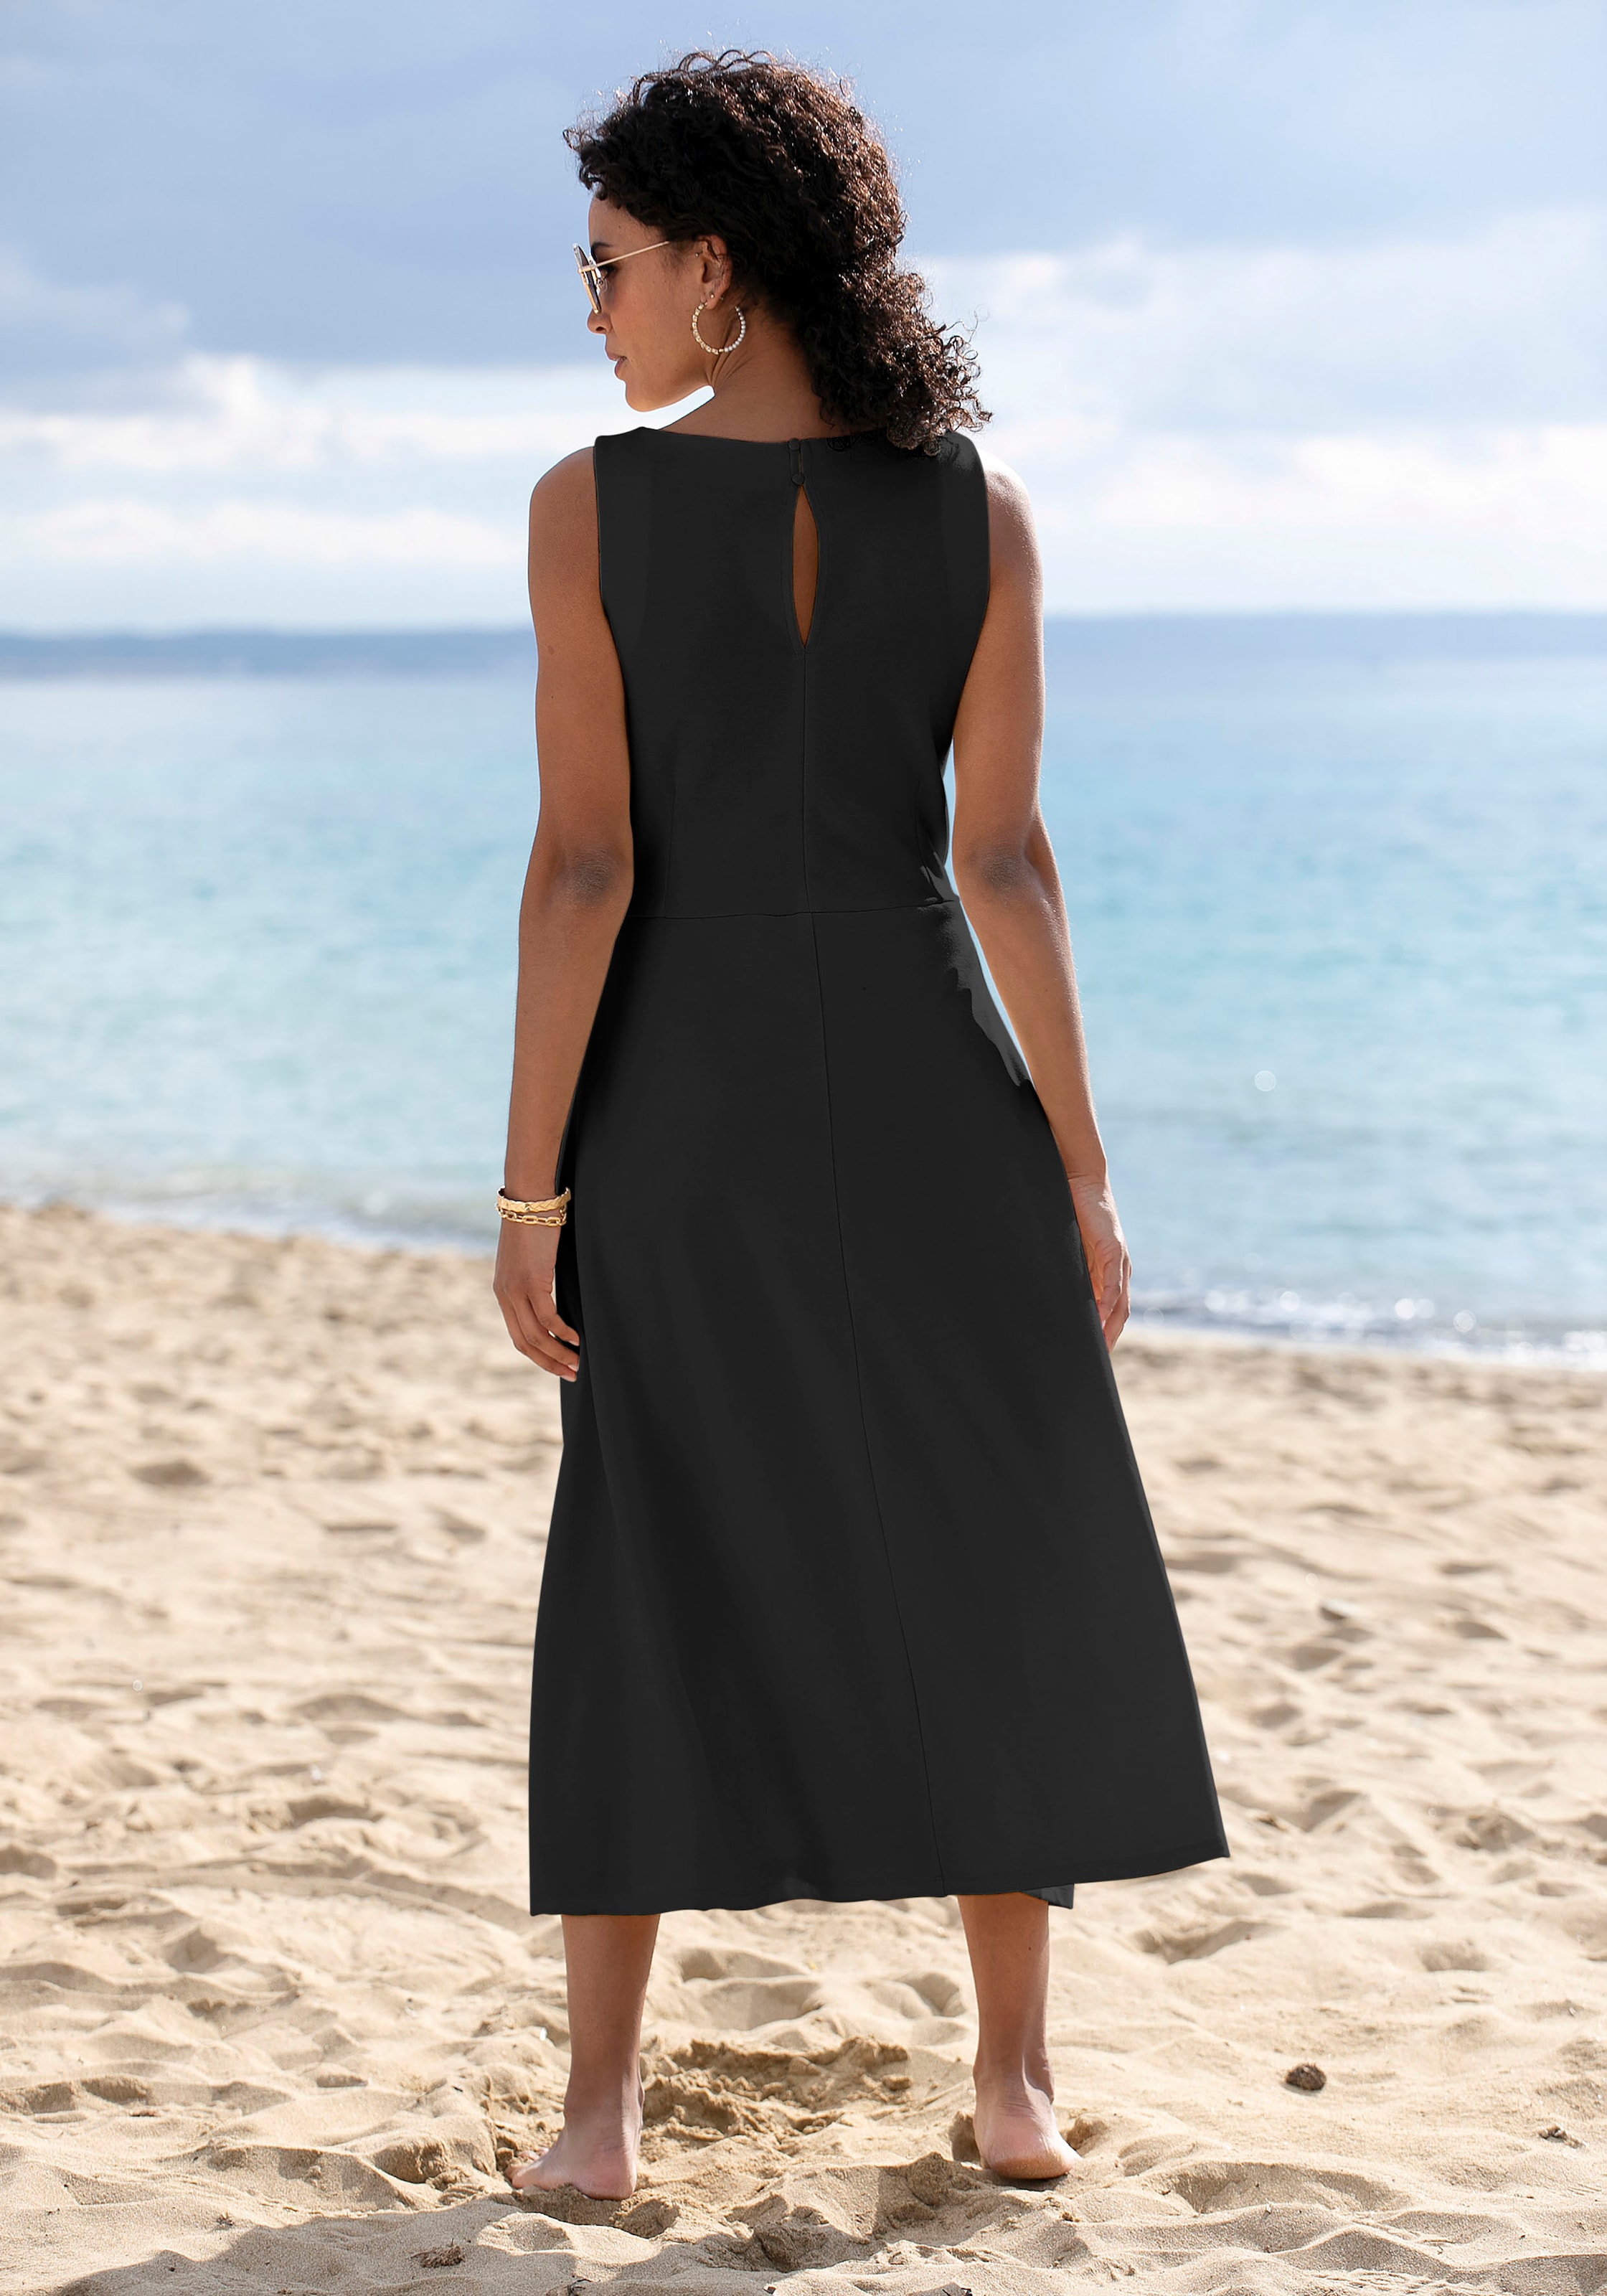 & online » Sommerkleid Beachtime Unterwäsche LASCANA | Lingerie Bademode, kaufen